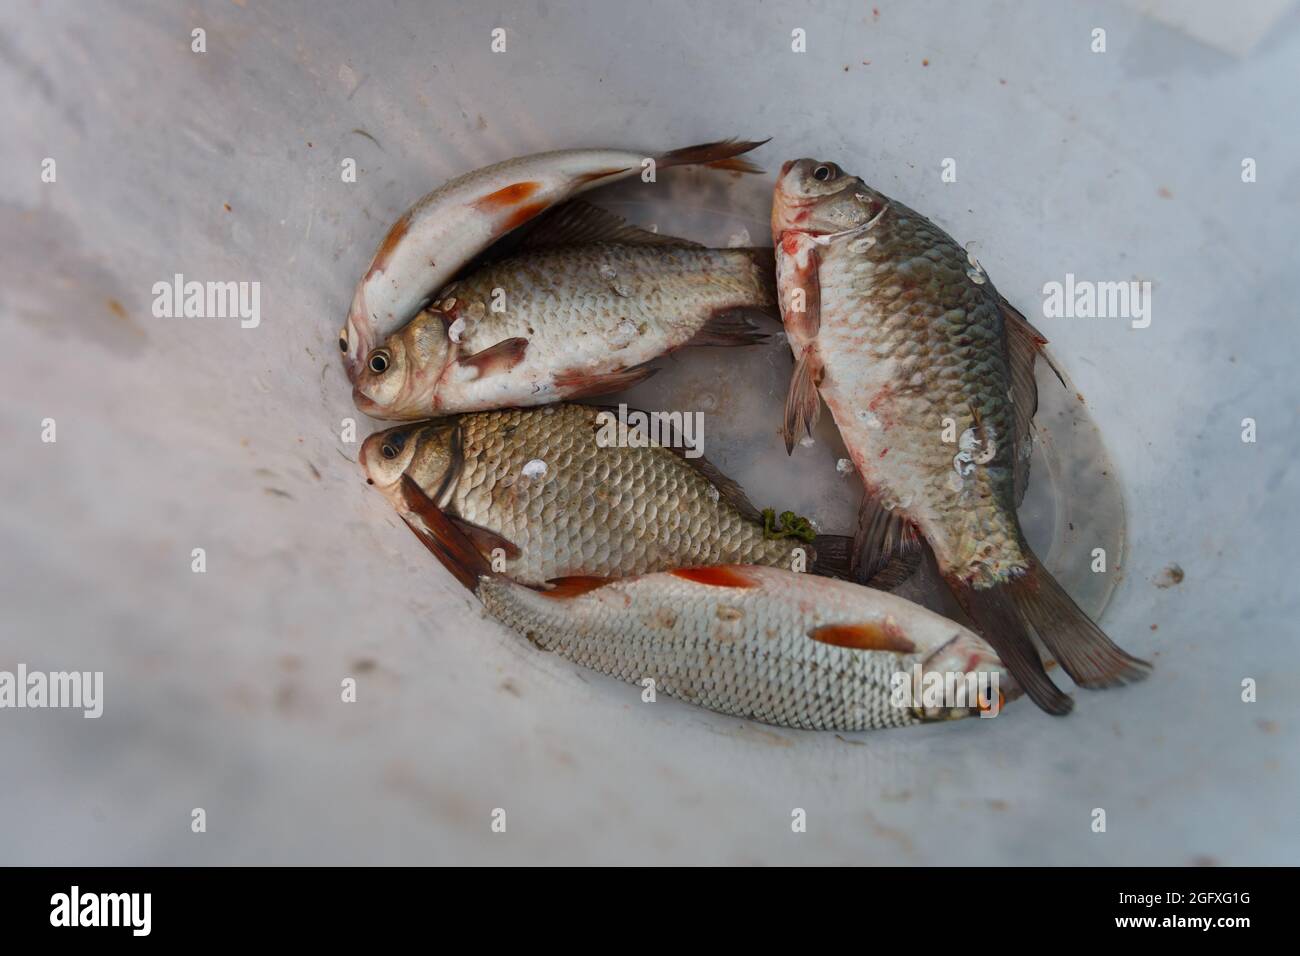 Le poisson de rivière capturé est dans un seau en plastique blanc Banque D'Images